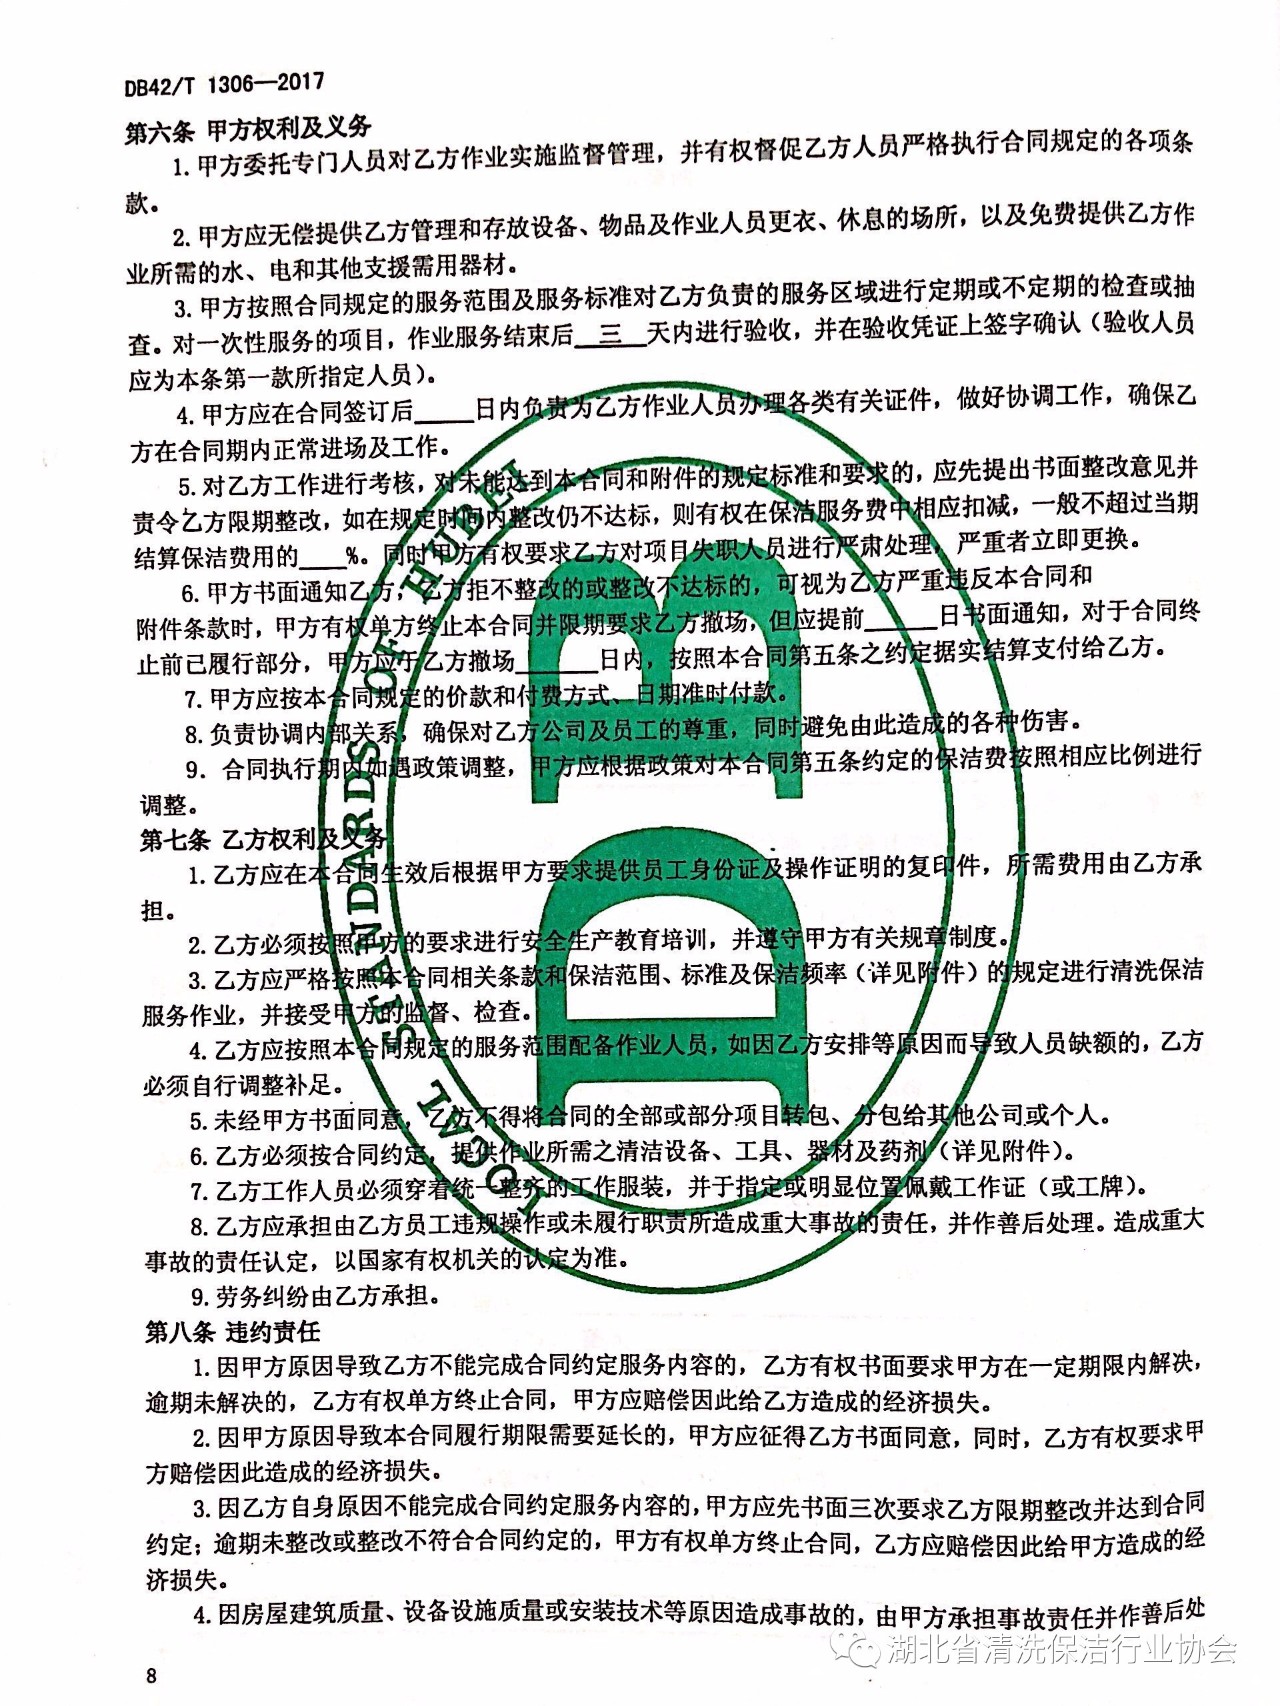 湖北省清洗保洁行业协会第一部地方标准《保洁服务通则》颁布实施12.jpg